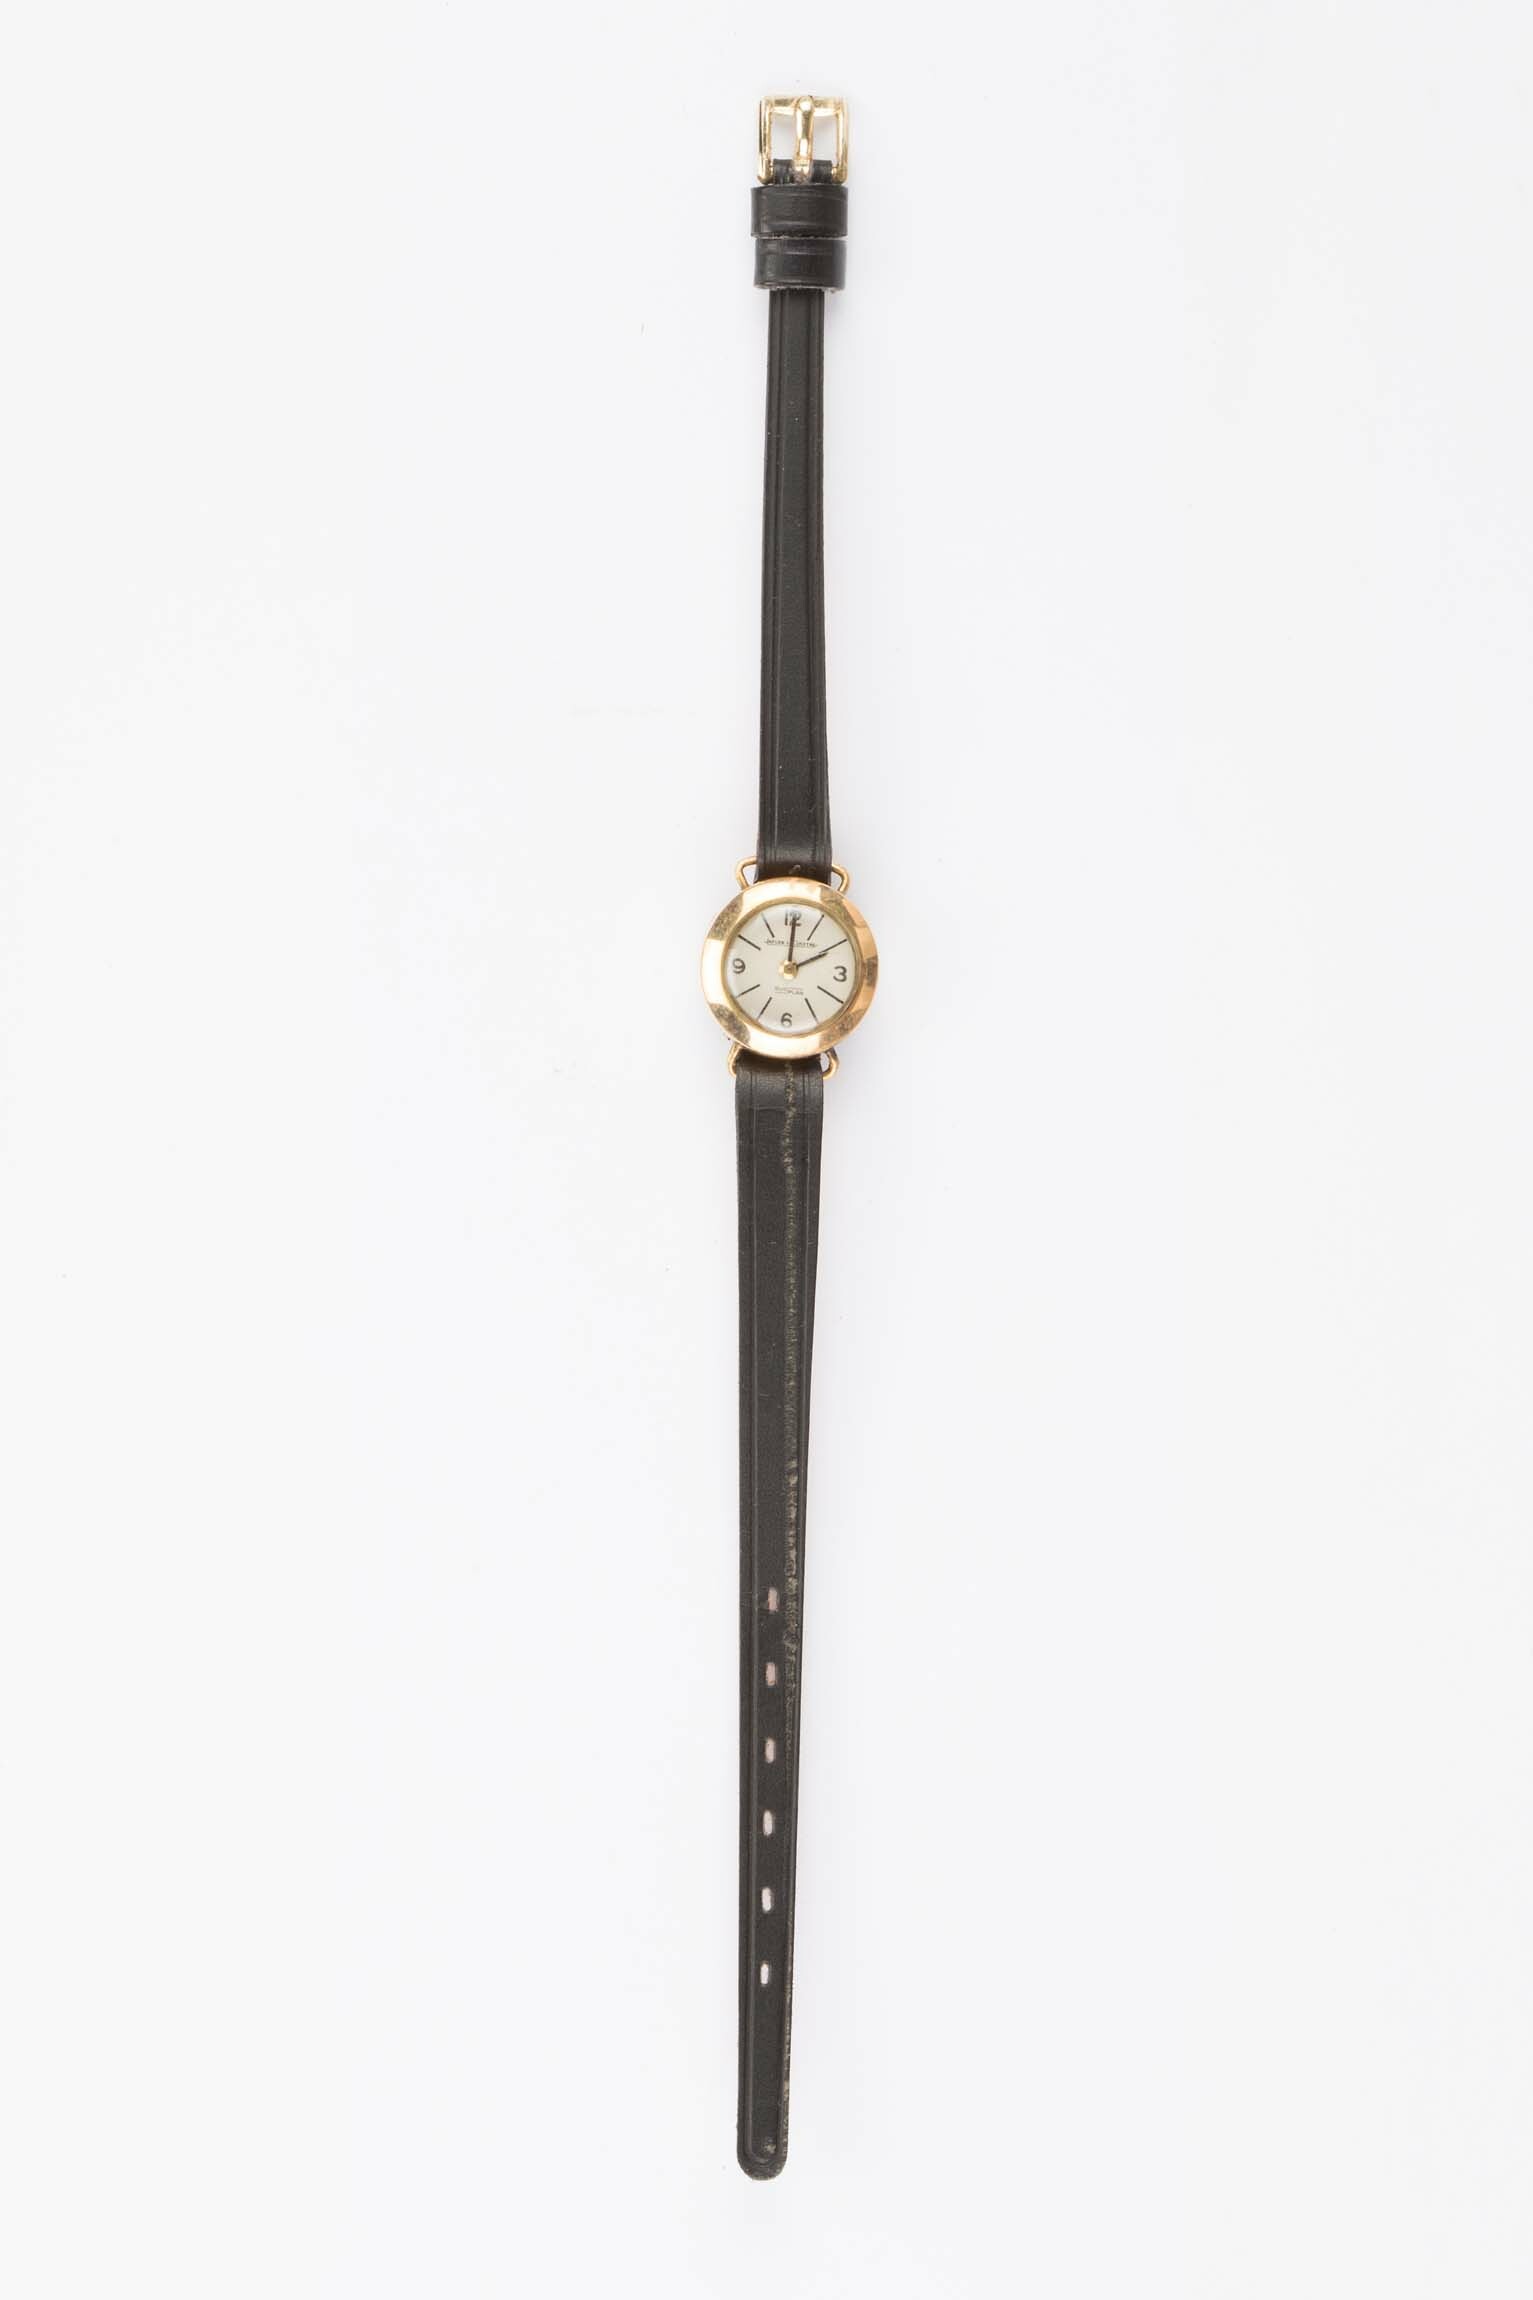 Armbanduhr, Jaeger-Le Coultre Duoplan, Le Sentier, um 1950 (Deutsches Uhrenmuseum CC BY-SA)